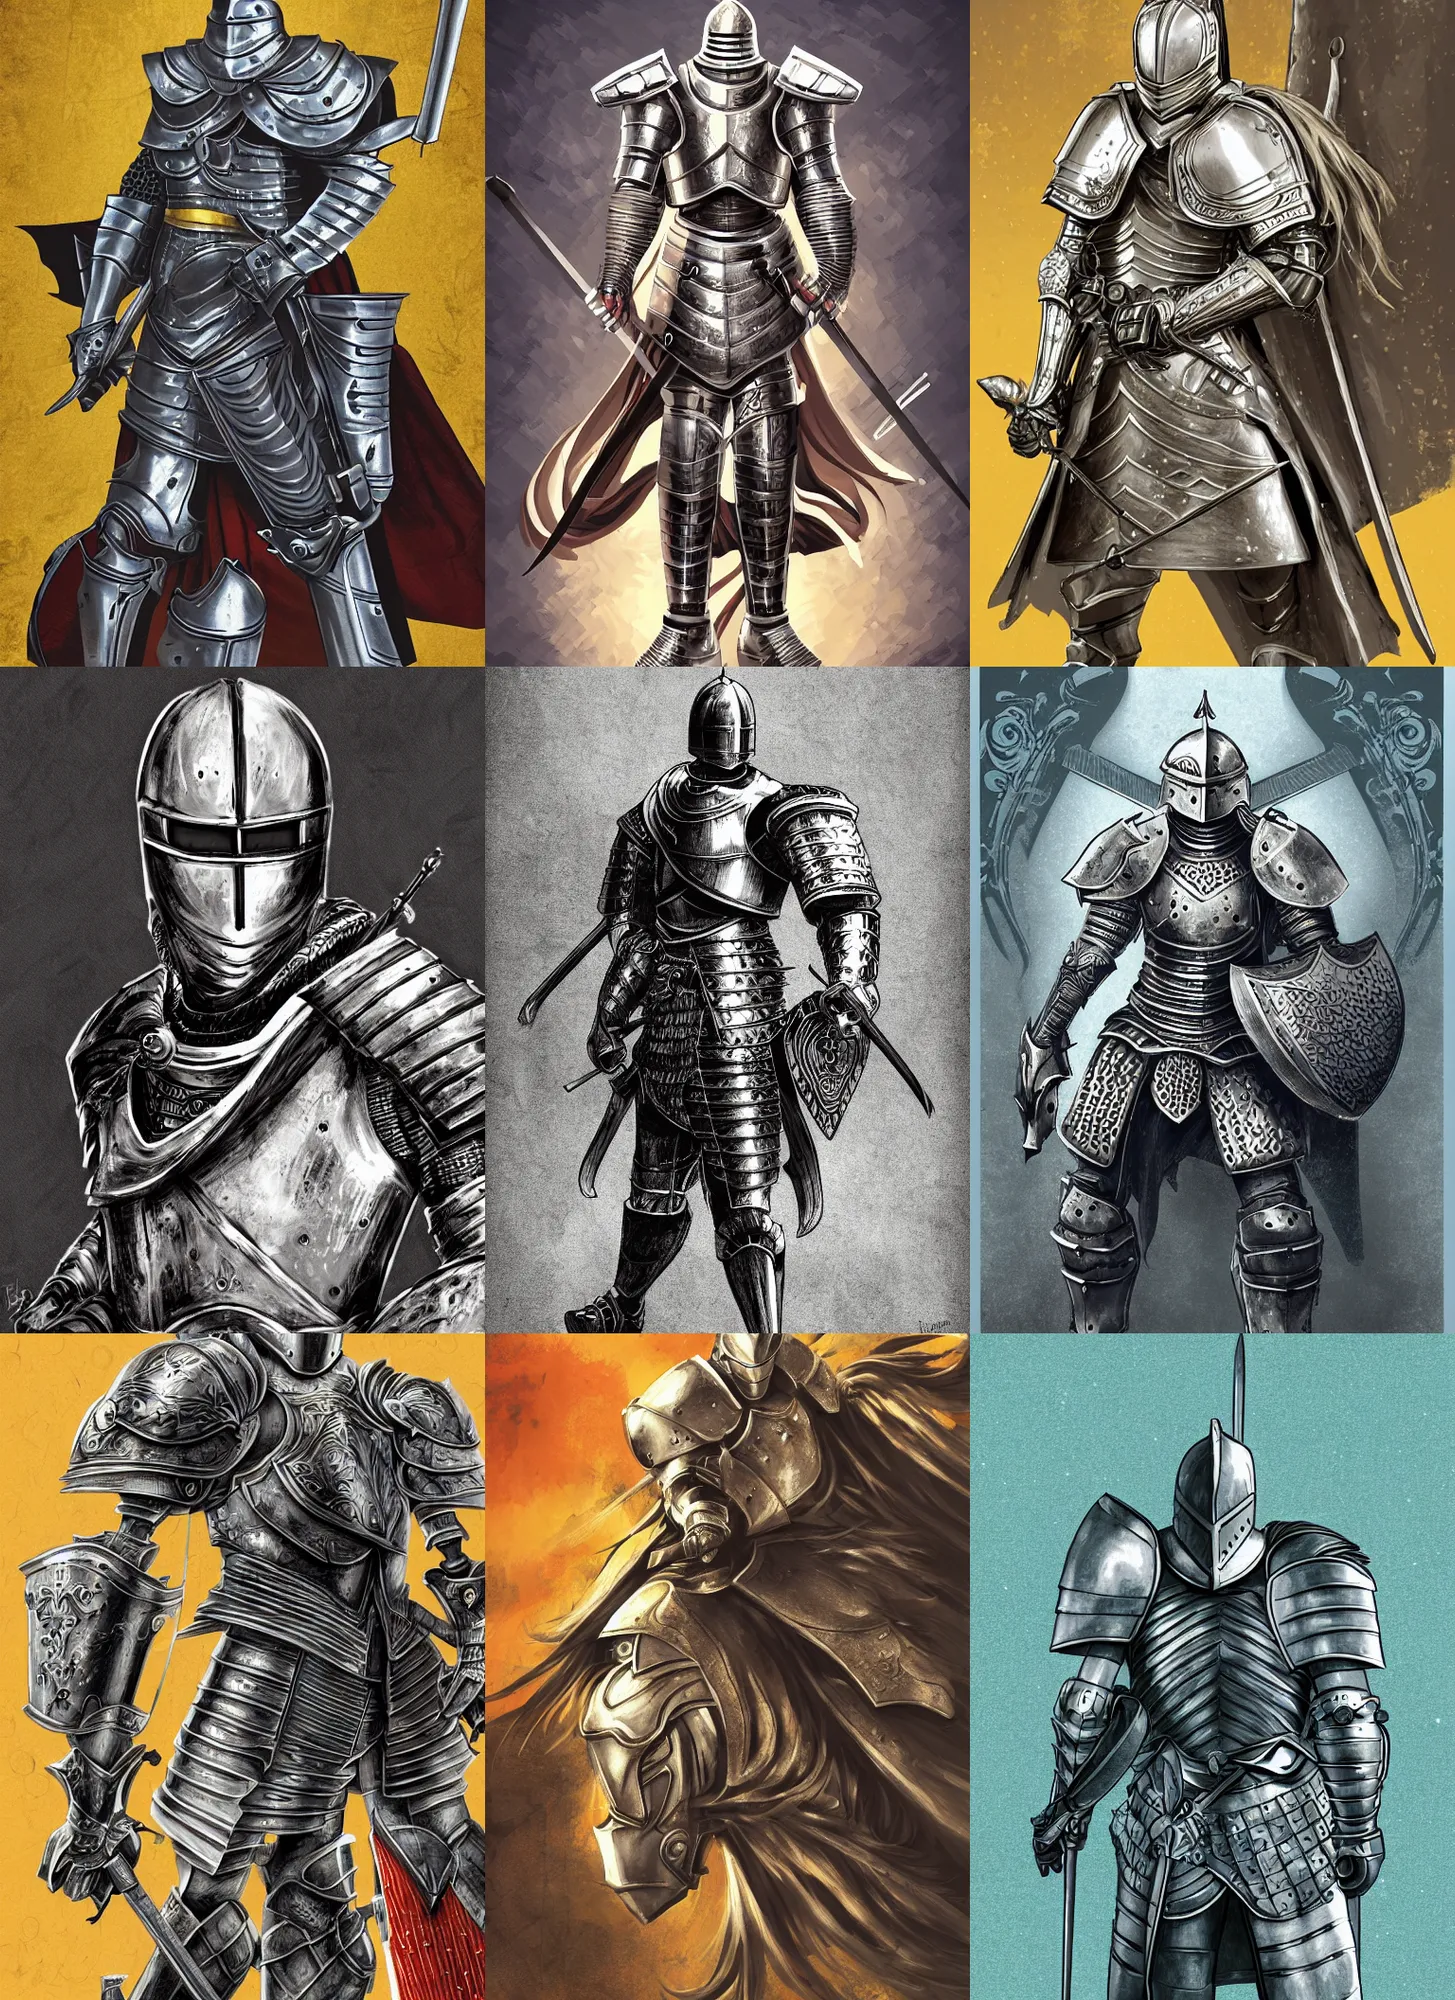 Prompt: knight in shining armor, digital illustration, by kazuki takahashi